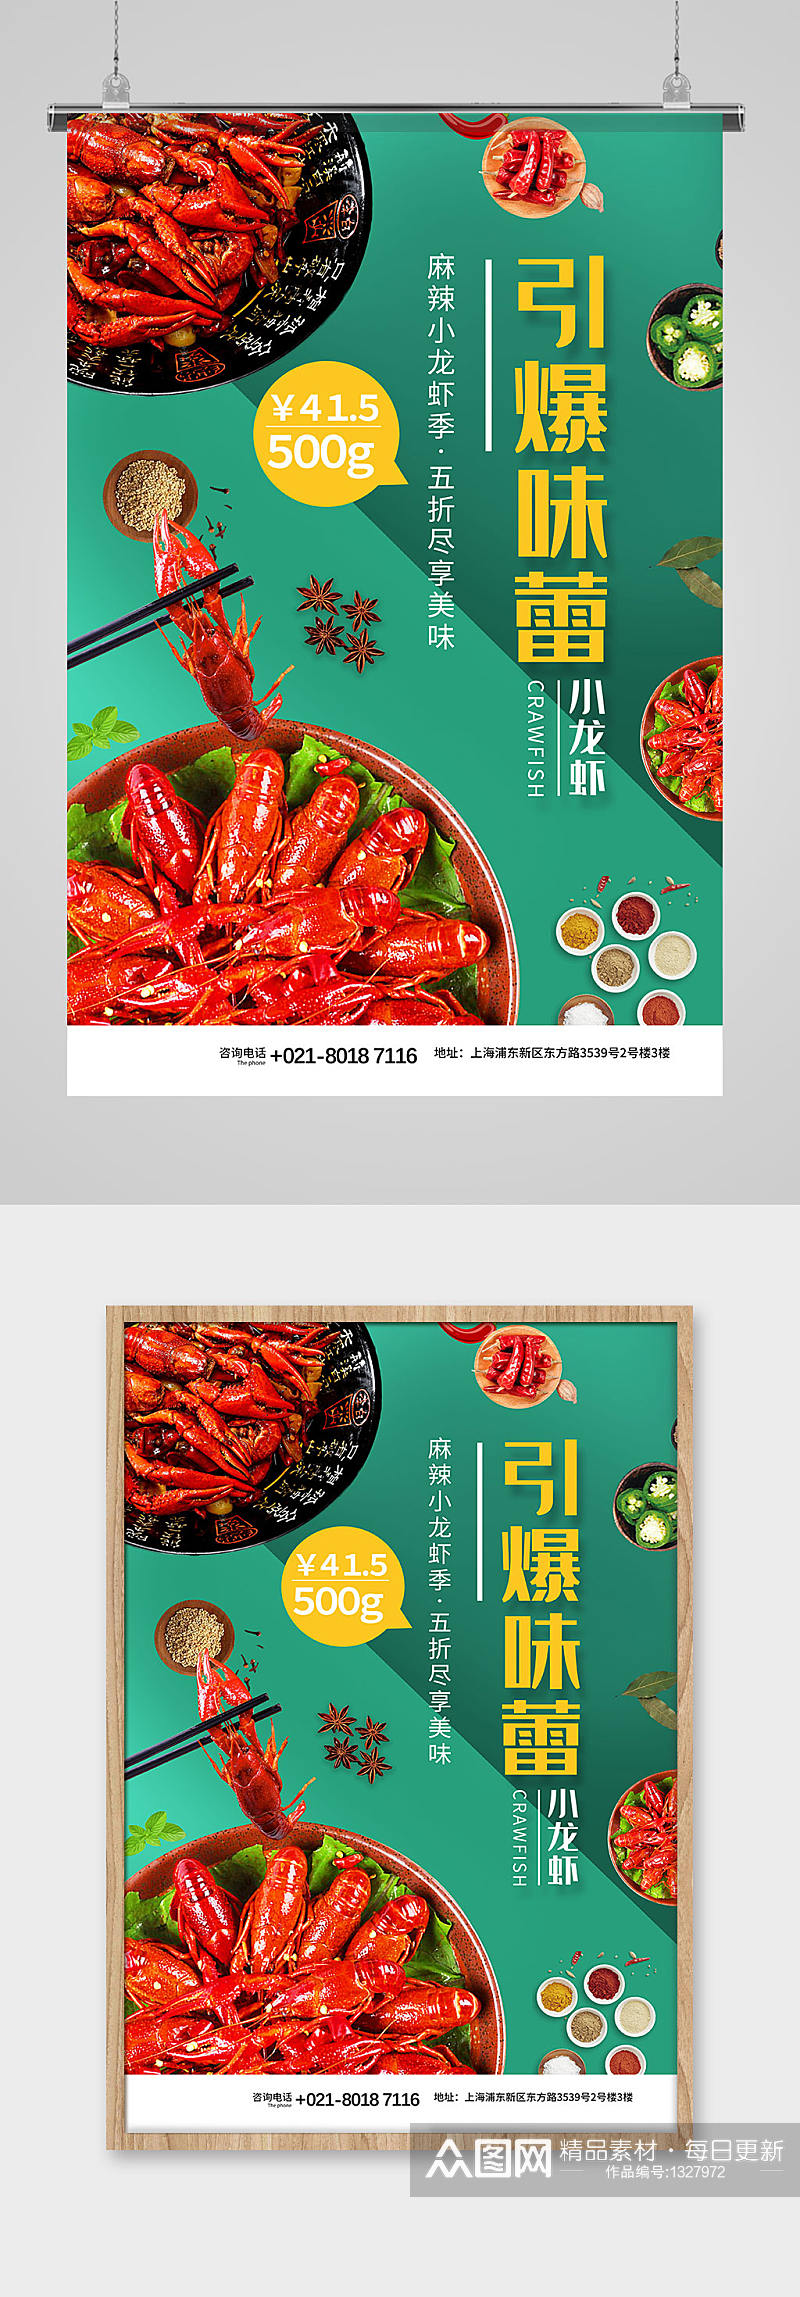 夏日美食引爆味蕾小龙虾促销宣传海报素材